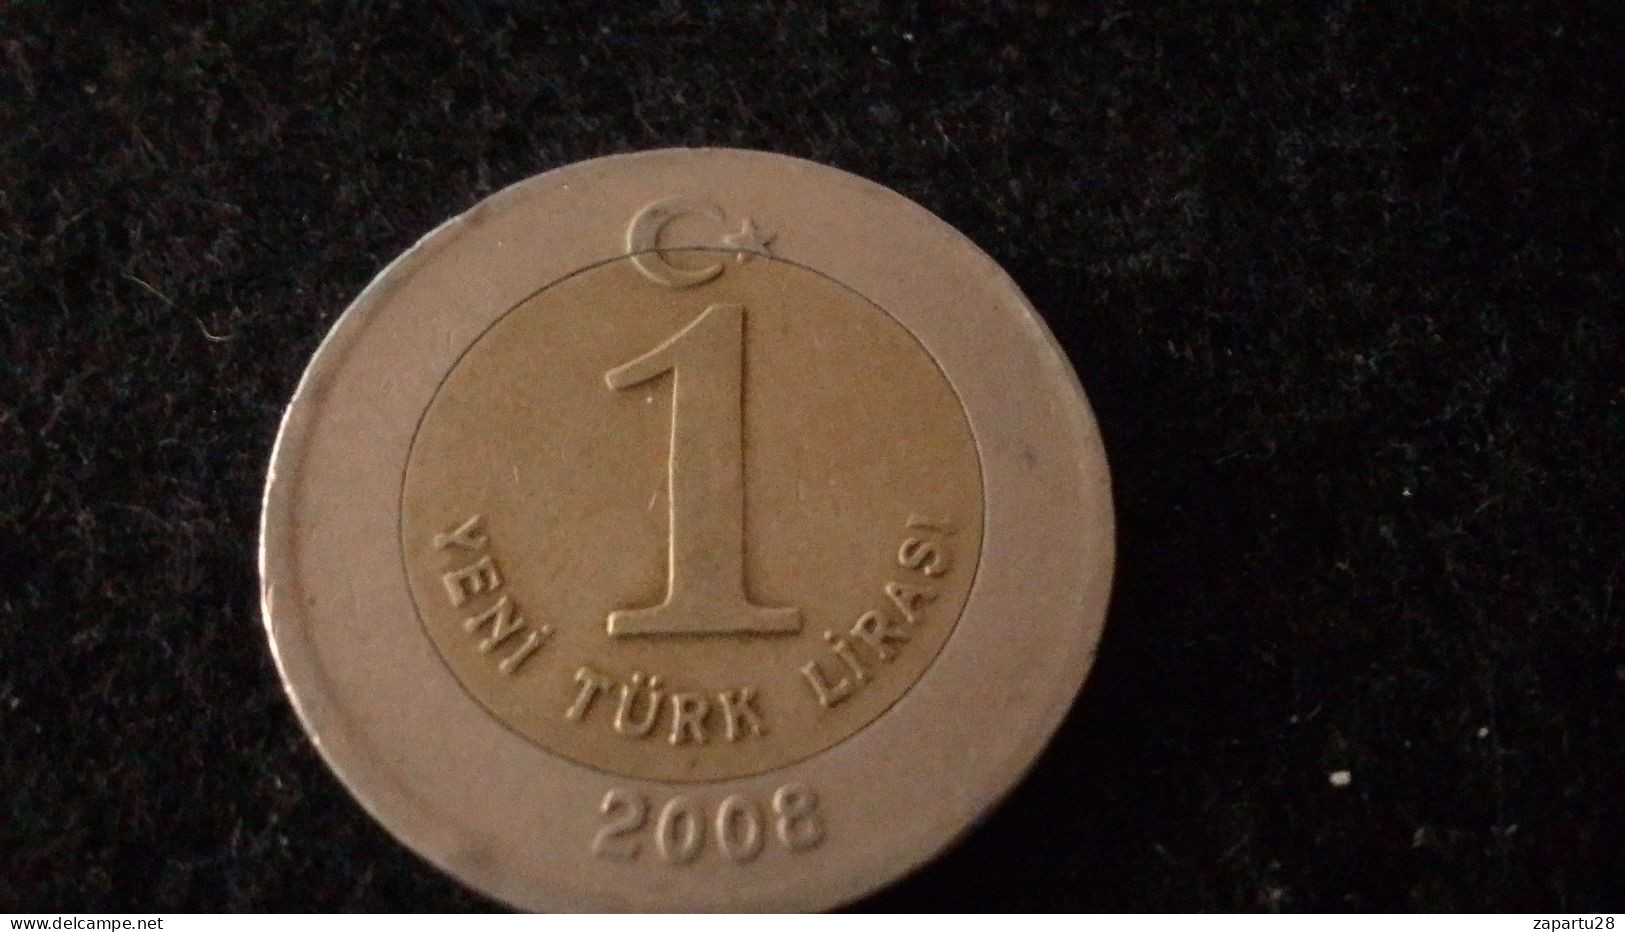 TÜRKİYE - 2008 - 1 YENİ TÜEK LİRASI - Turkey